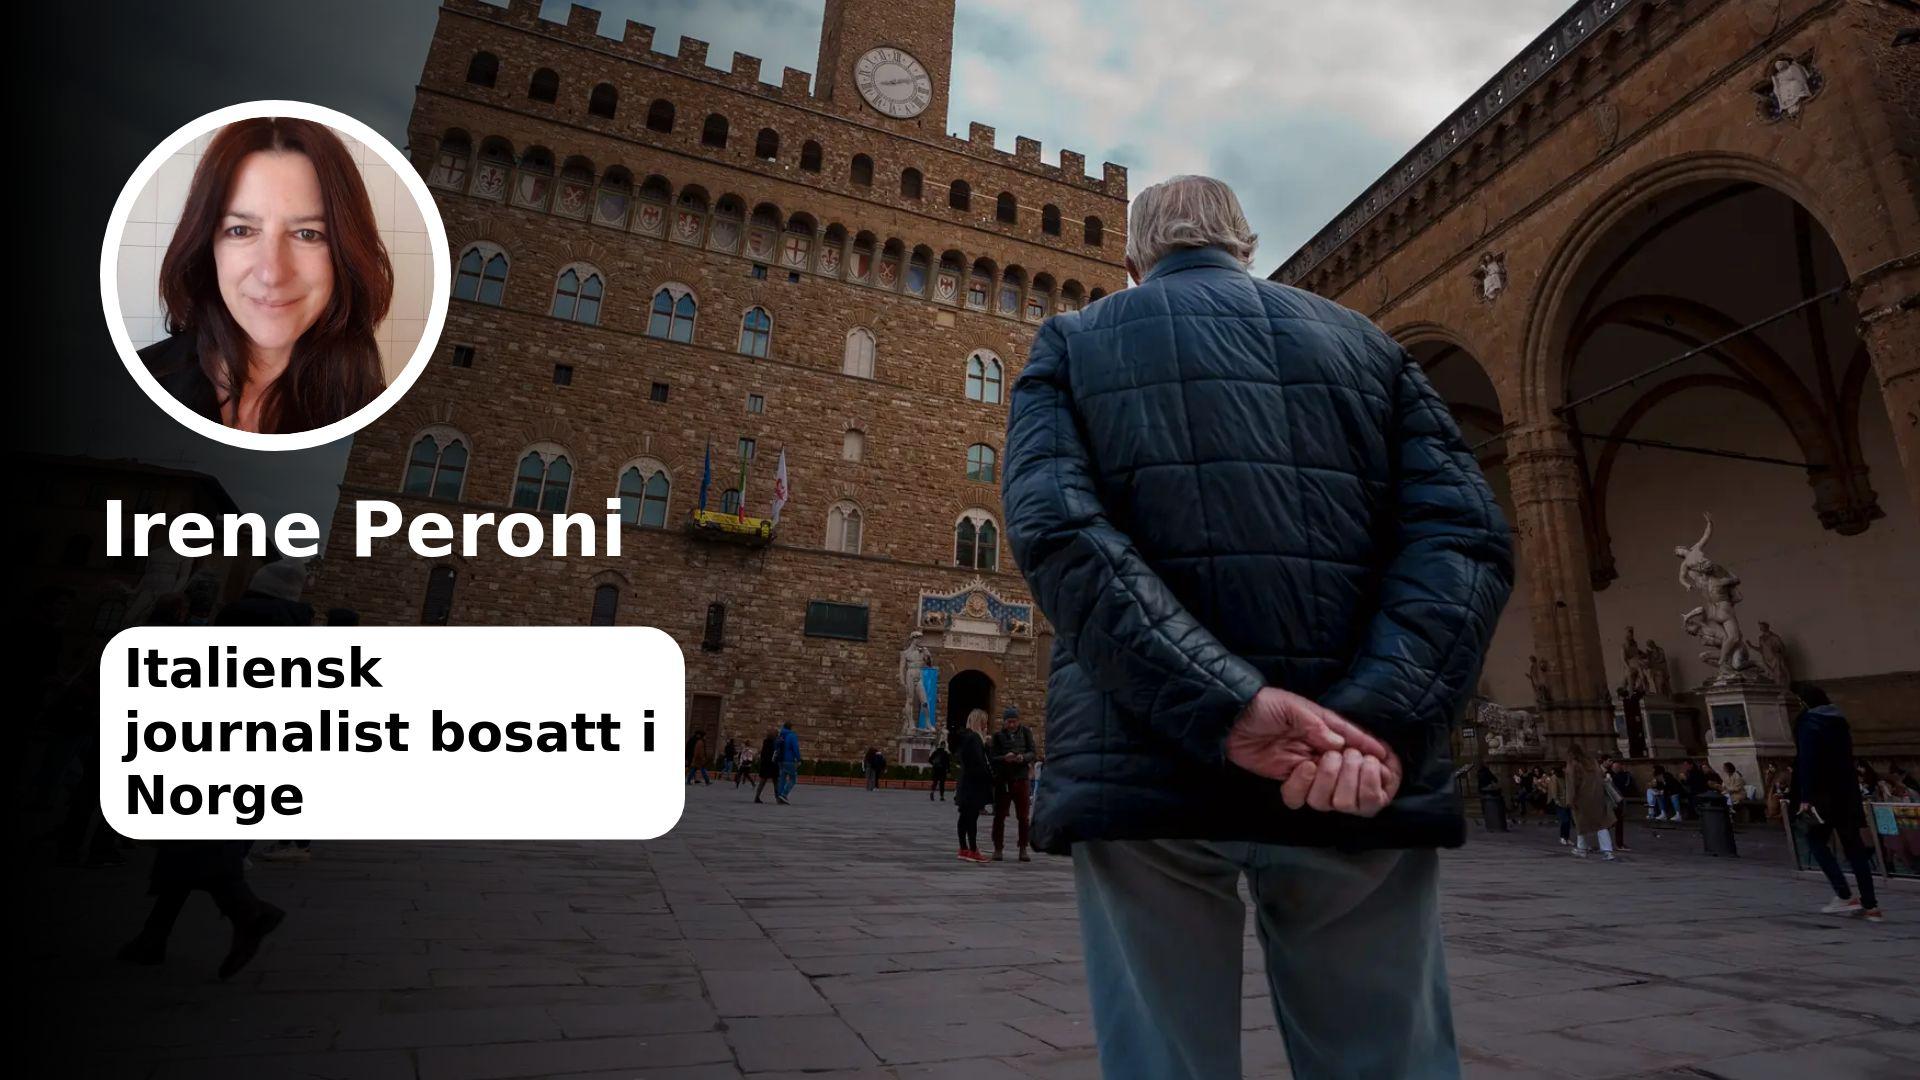 “La bella vita” anche per gli anziani?  L’Italia potrebbe avere una risposta alla gigantesca ondata di anziani.